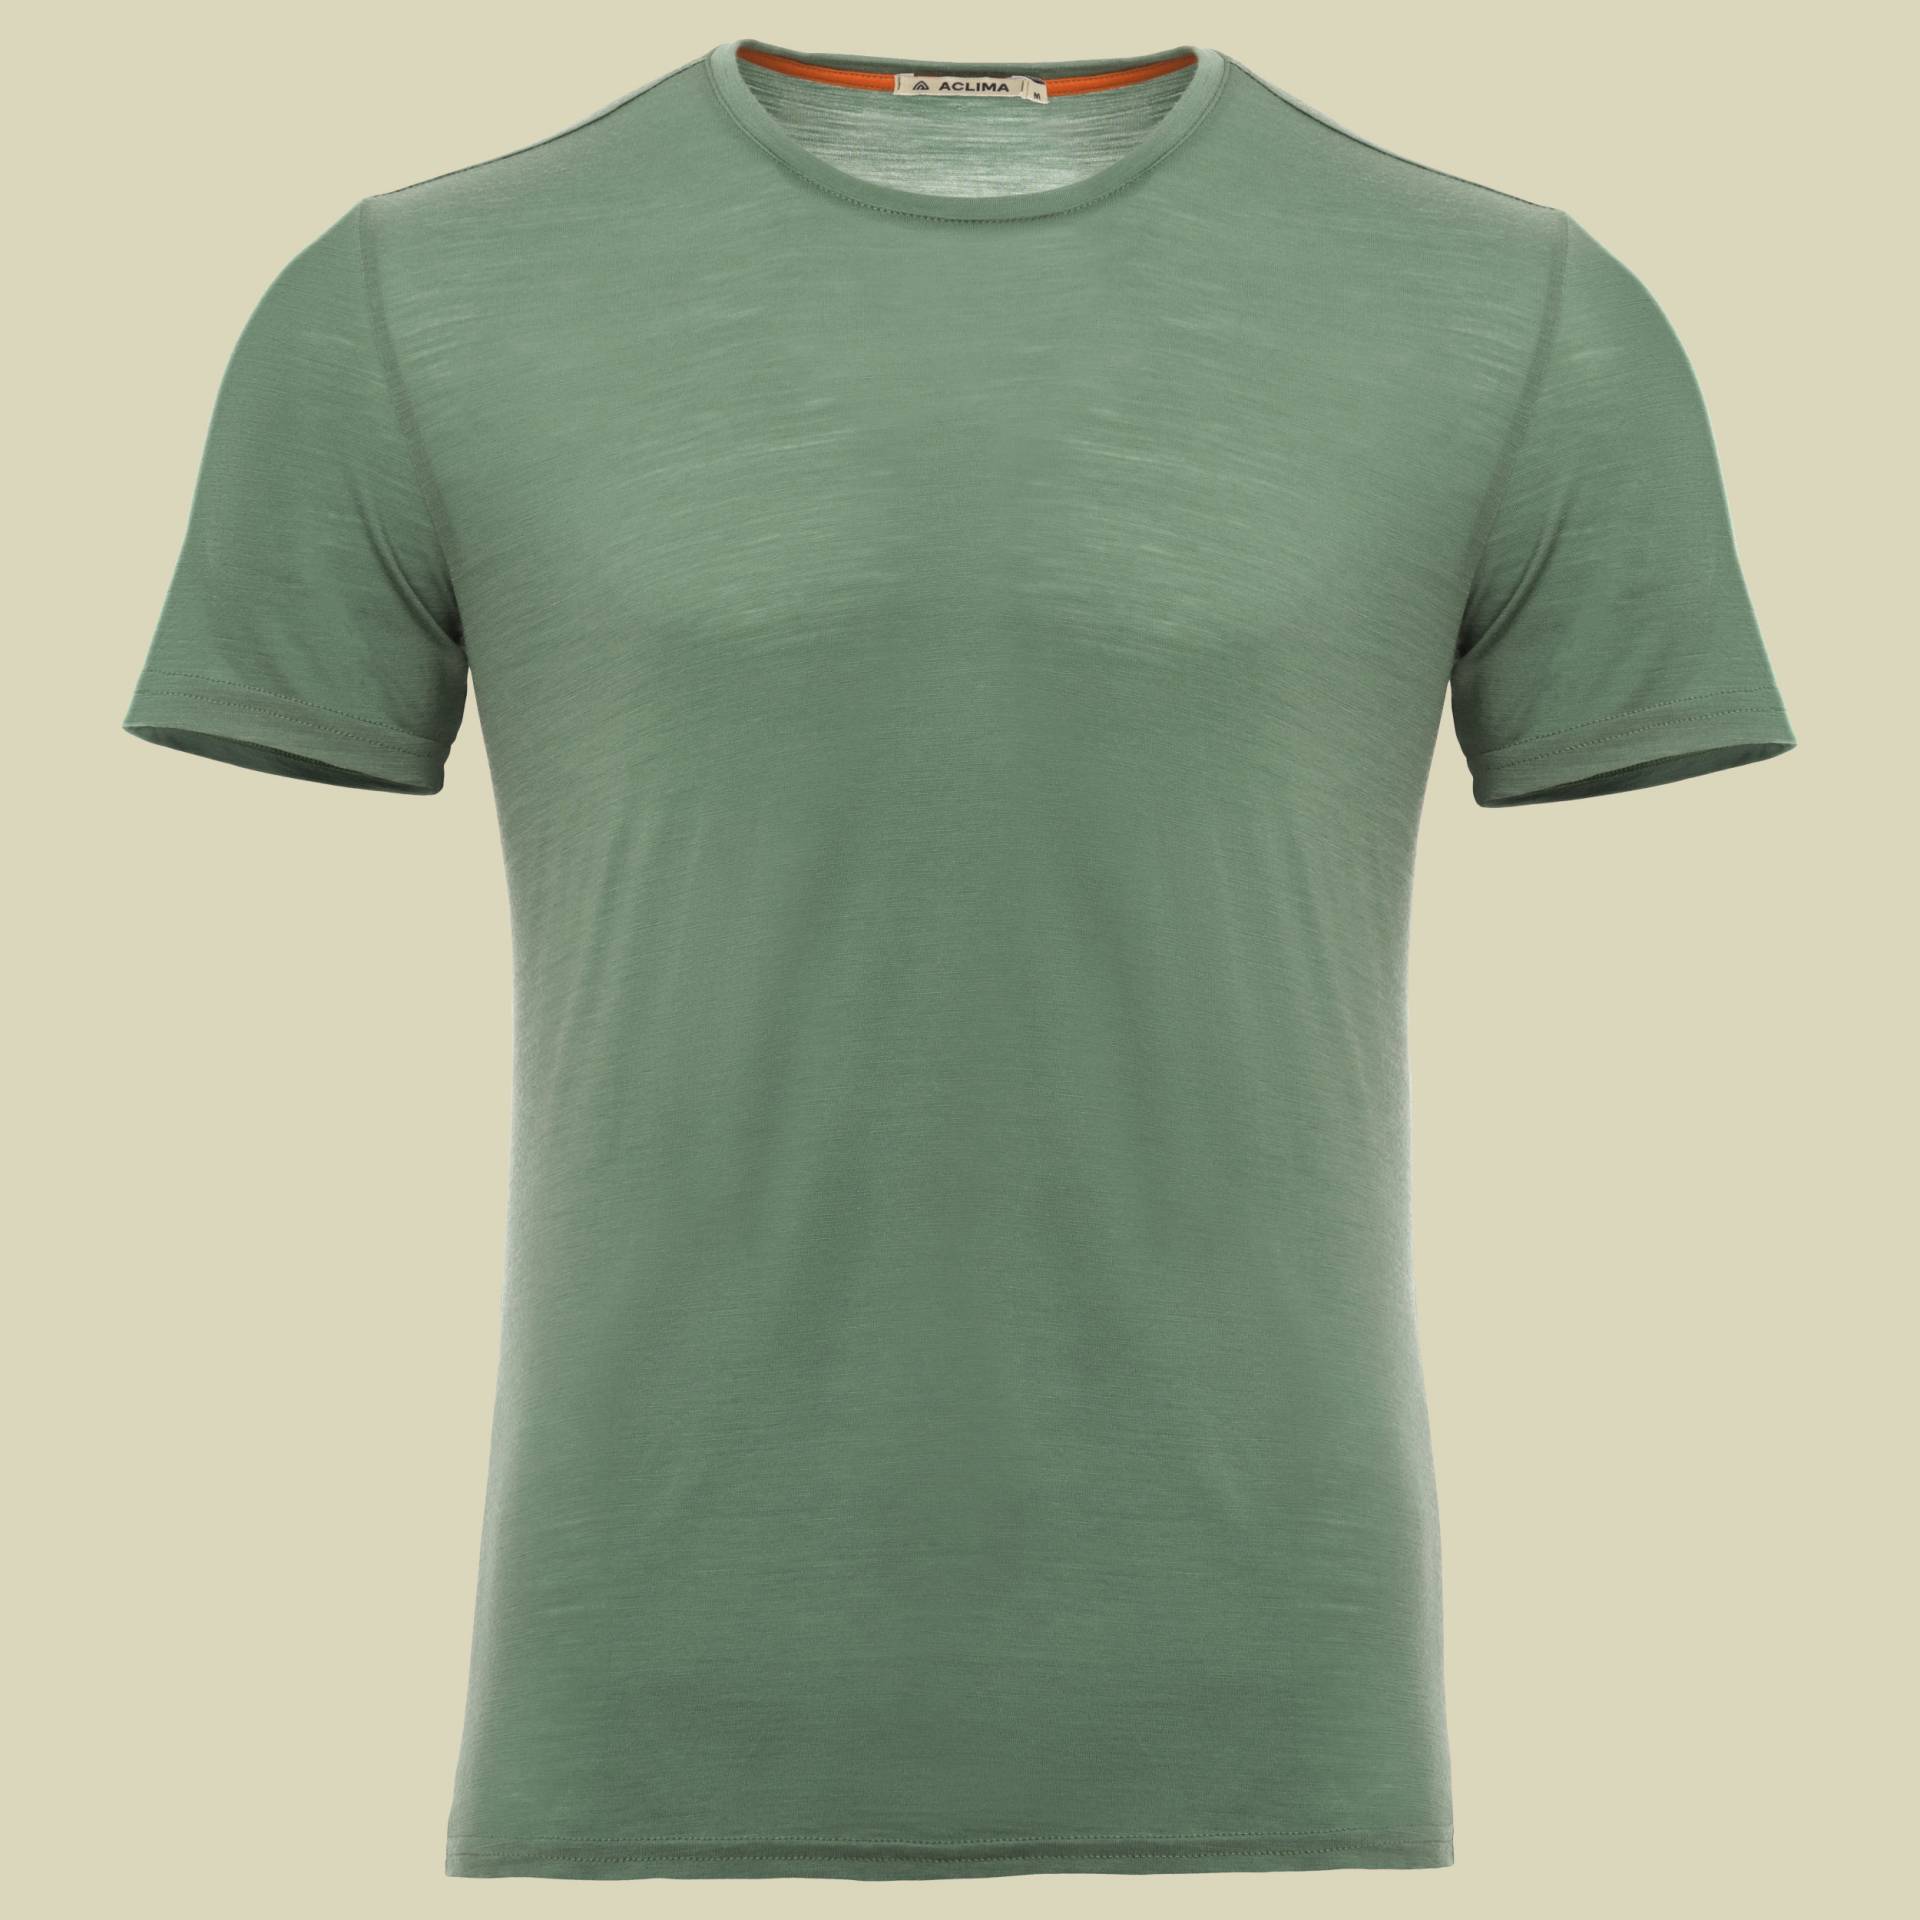 LightWool T-Shirt Men Größe M  Farbe dark ivy von aclima